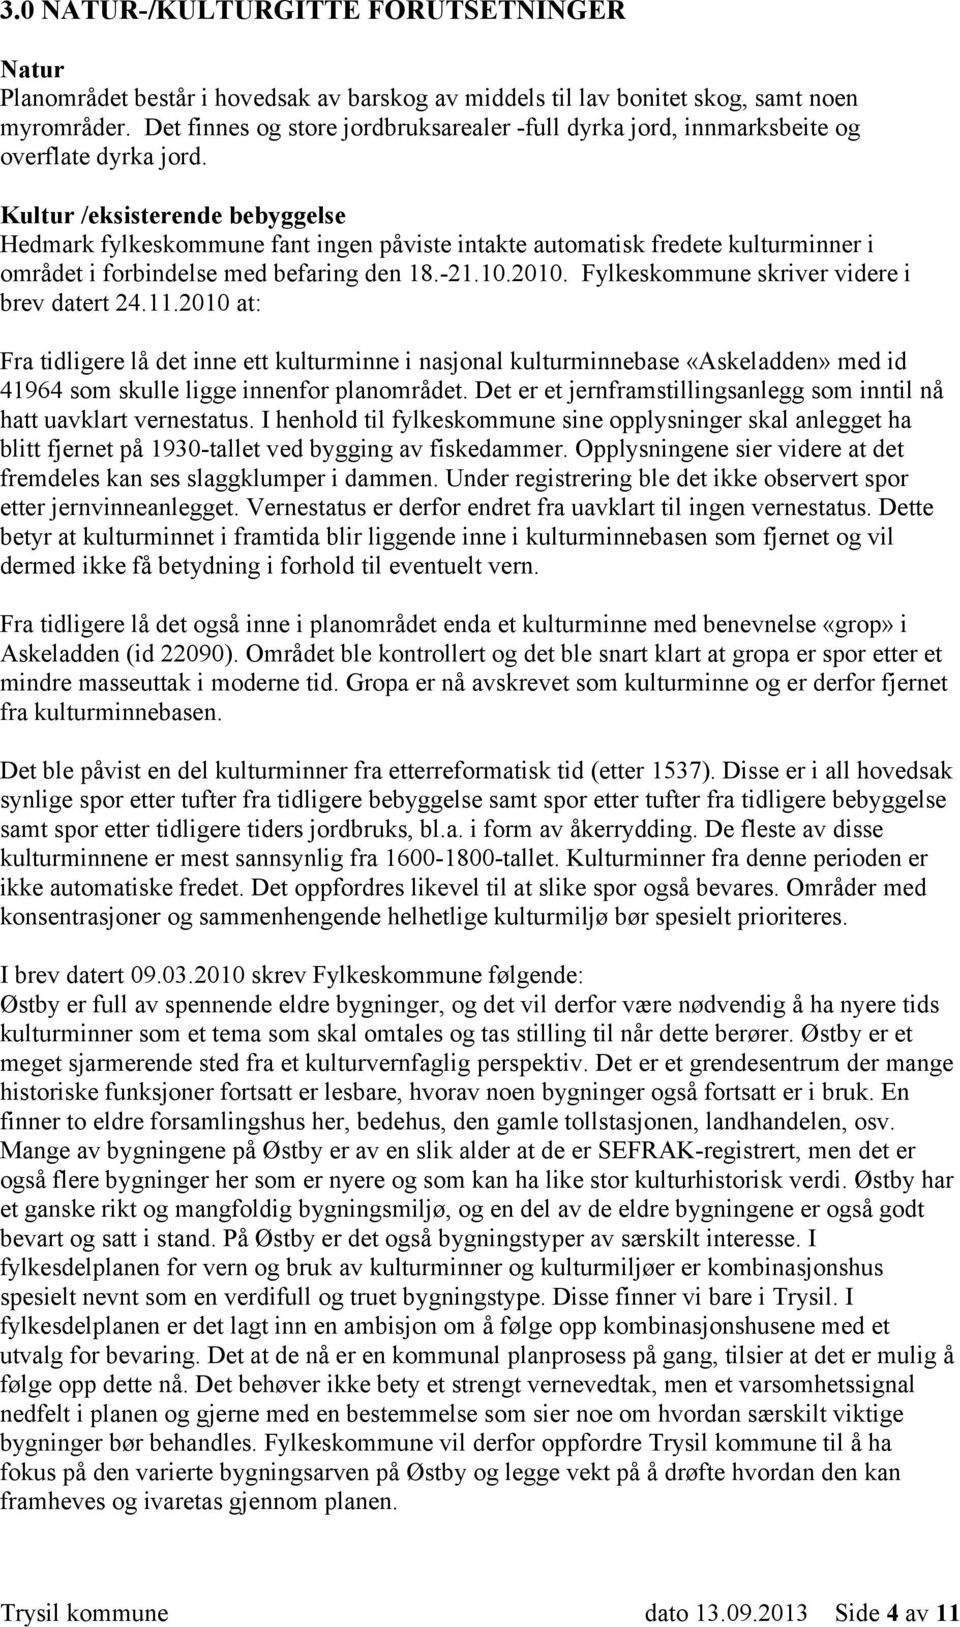 Kultur /eksisterende bebyggelse Hedmark fylkeskommune fant ingen påviste intakte automatisk fredete kulturminner i området i forbindelse med befaring den 18.-21.10.2010.